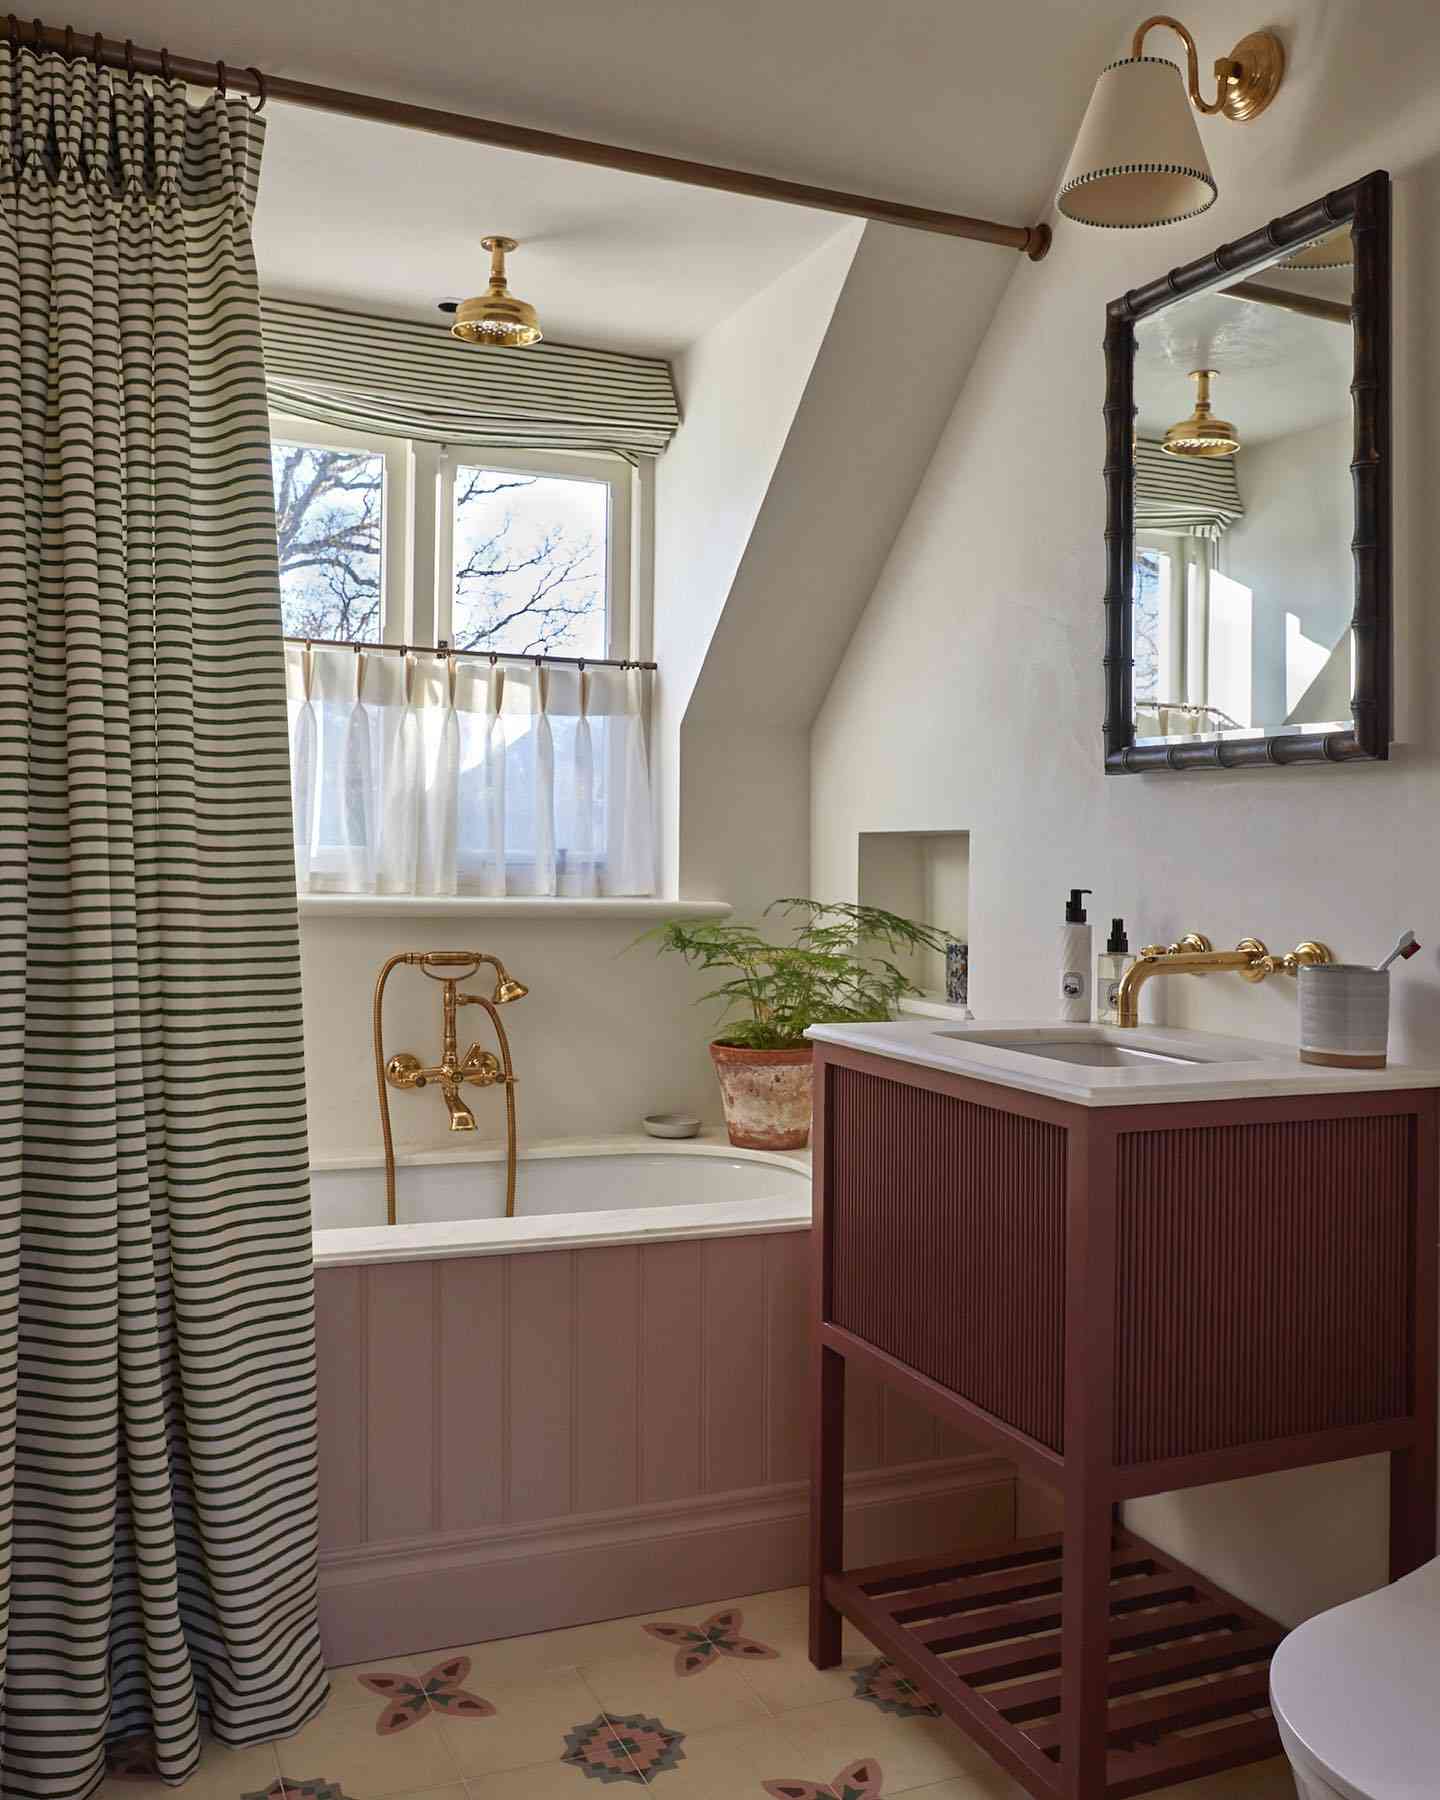 Banheiro com detalhes em ouro e cortina de chuveiro listrada